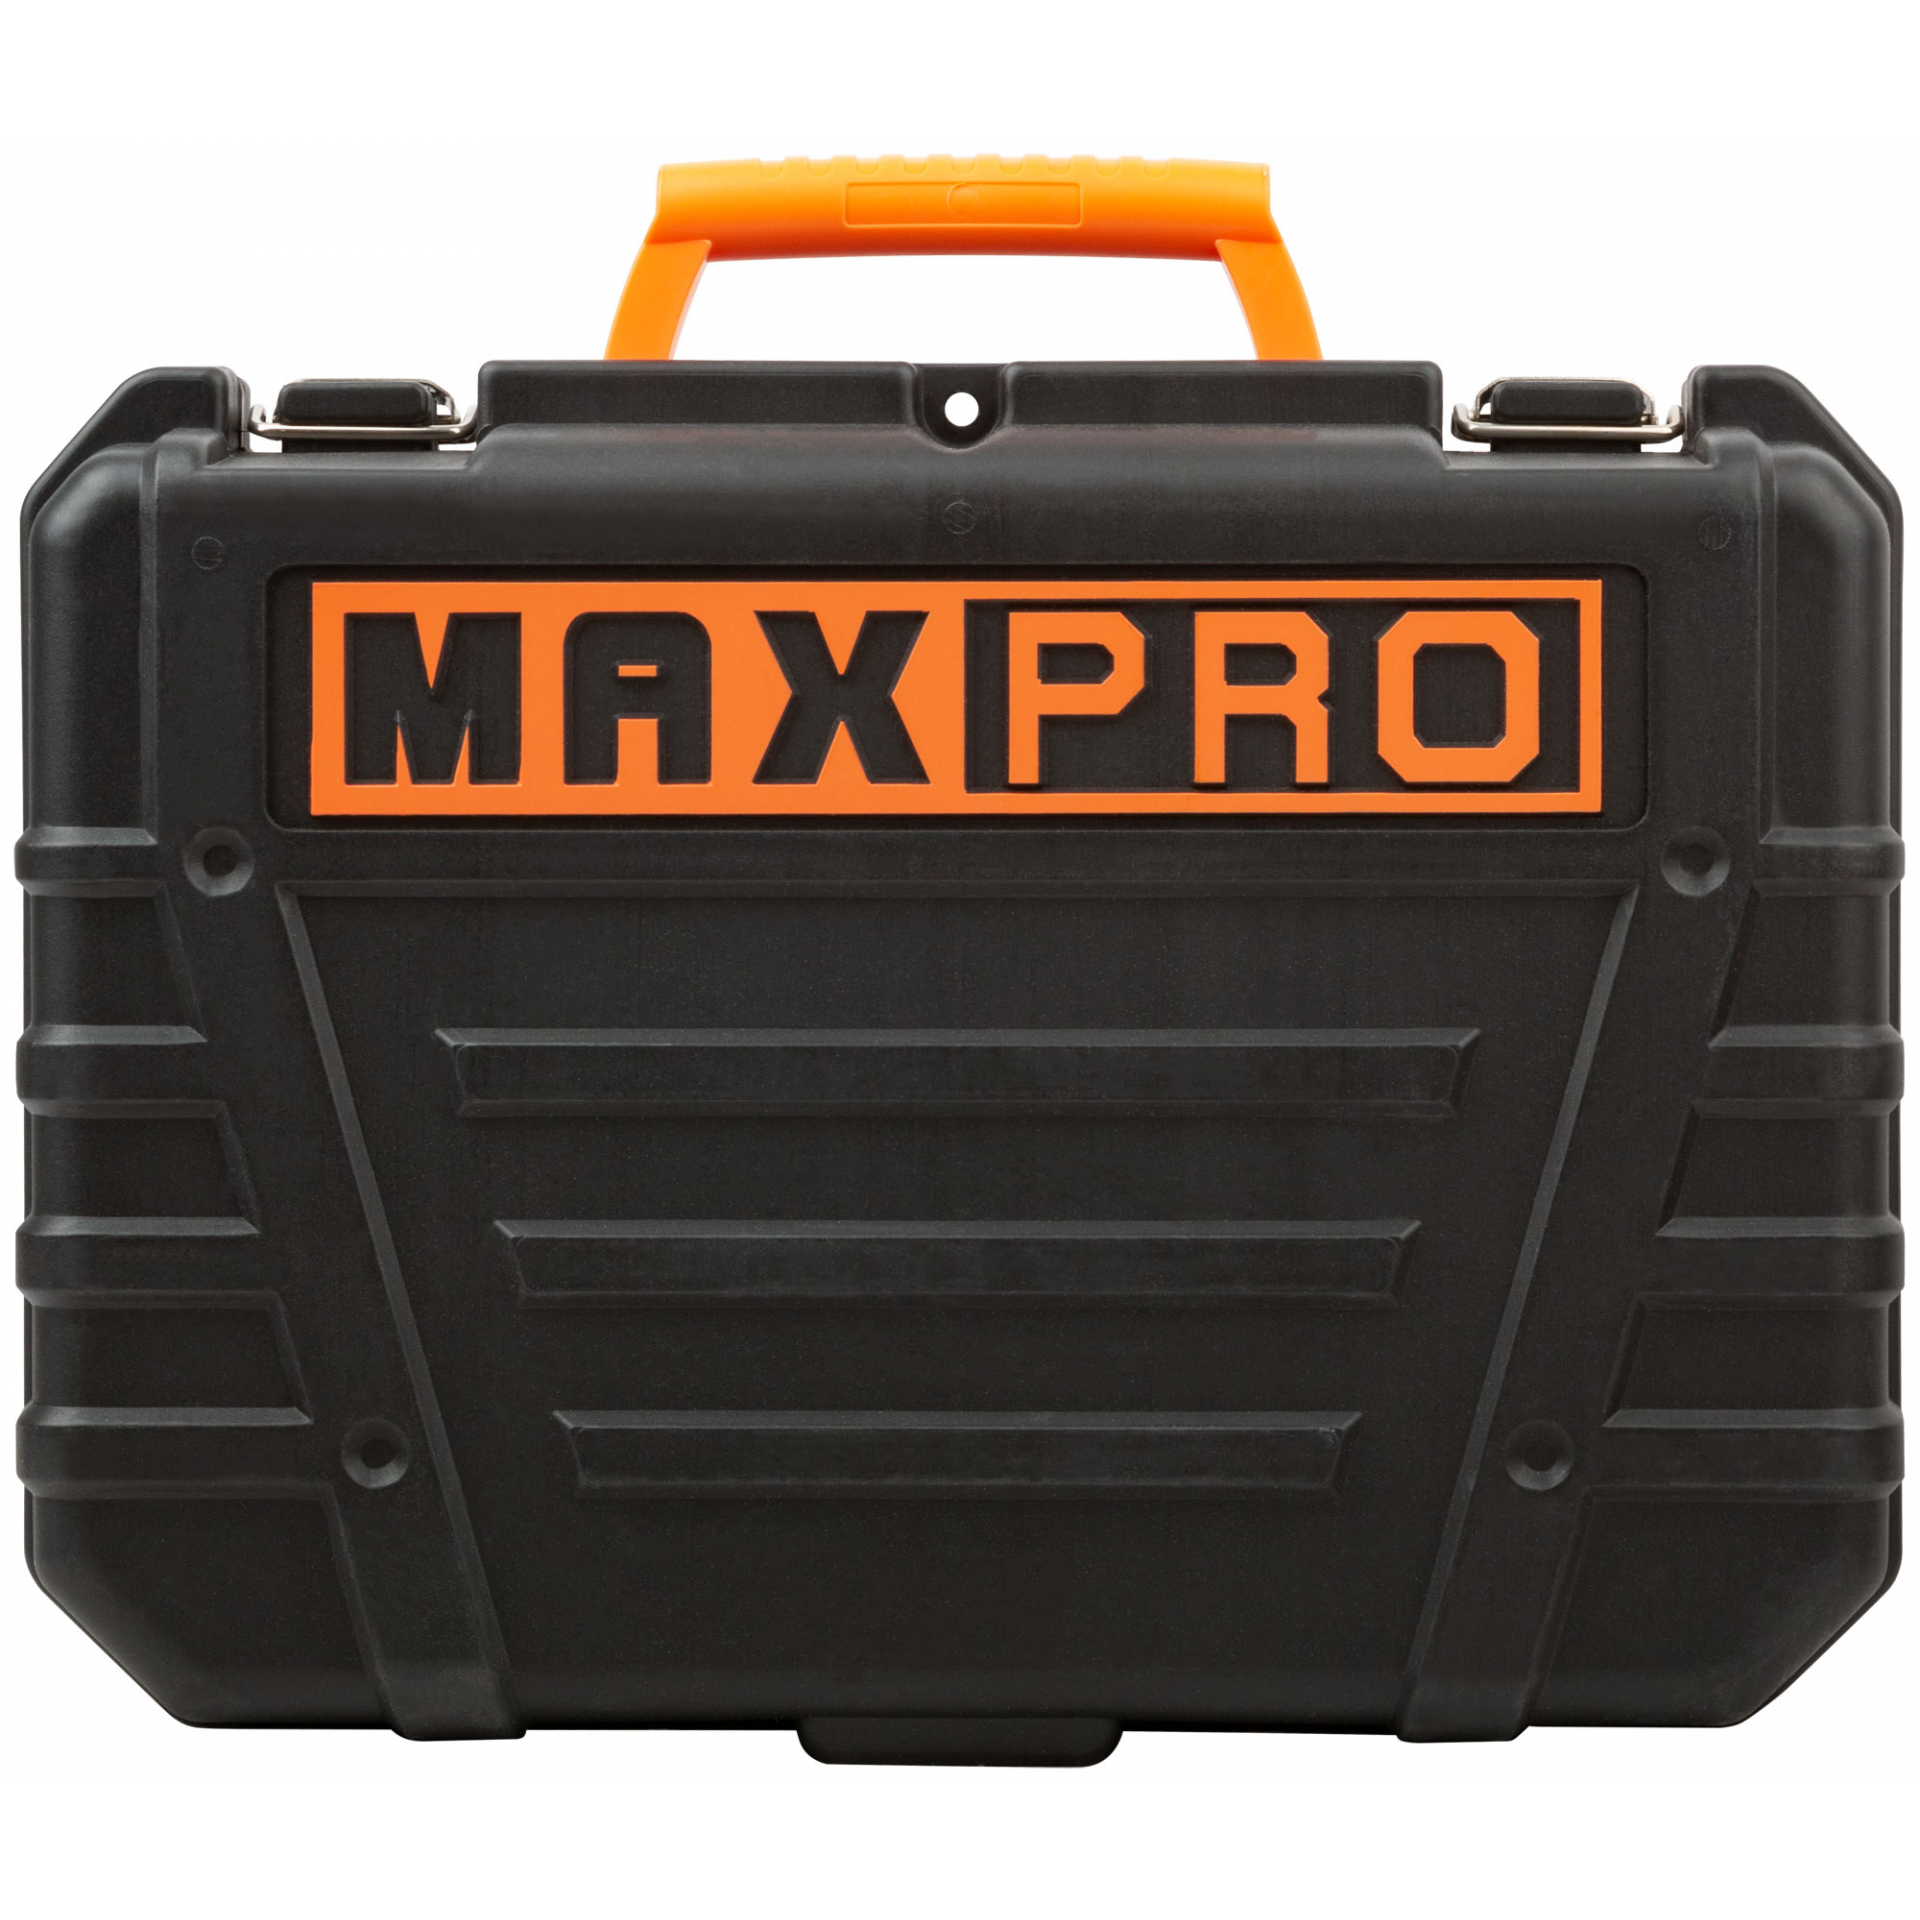 MAX-PRO Перфоратор монтажный 800 Вт; 0-1200об/мин; 2,8Дж; 3 режима; Д/Б/М-30/26/13; 3,2кг; SDS-PLUS; антивибрационная ручка; резиновые вставки; резино